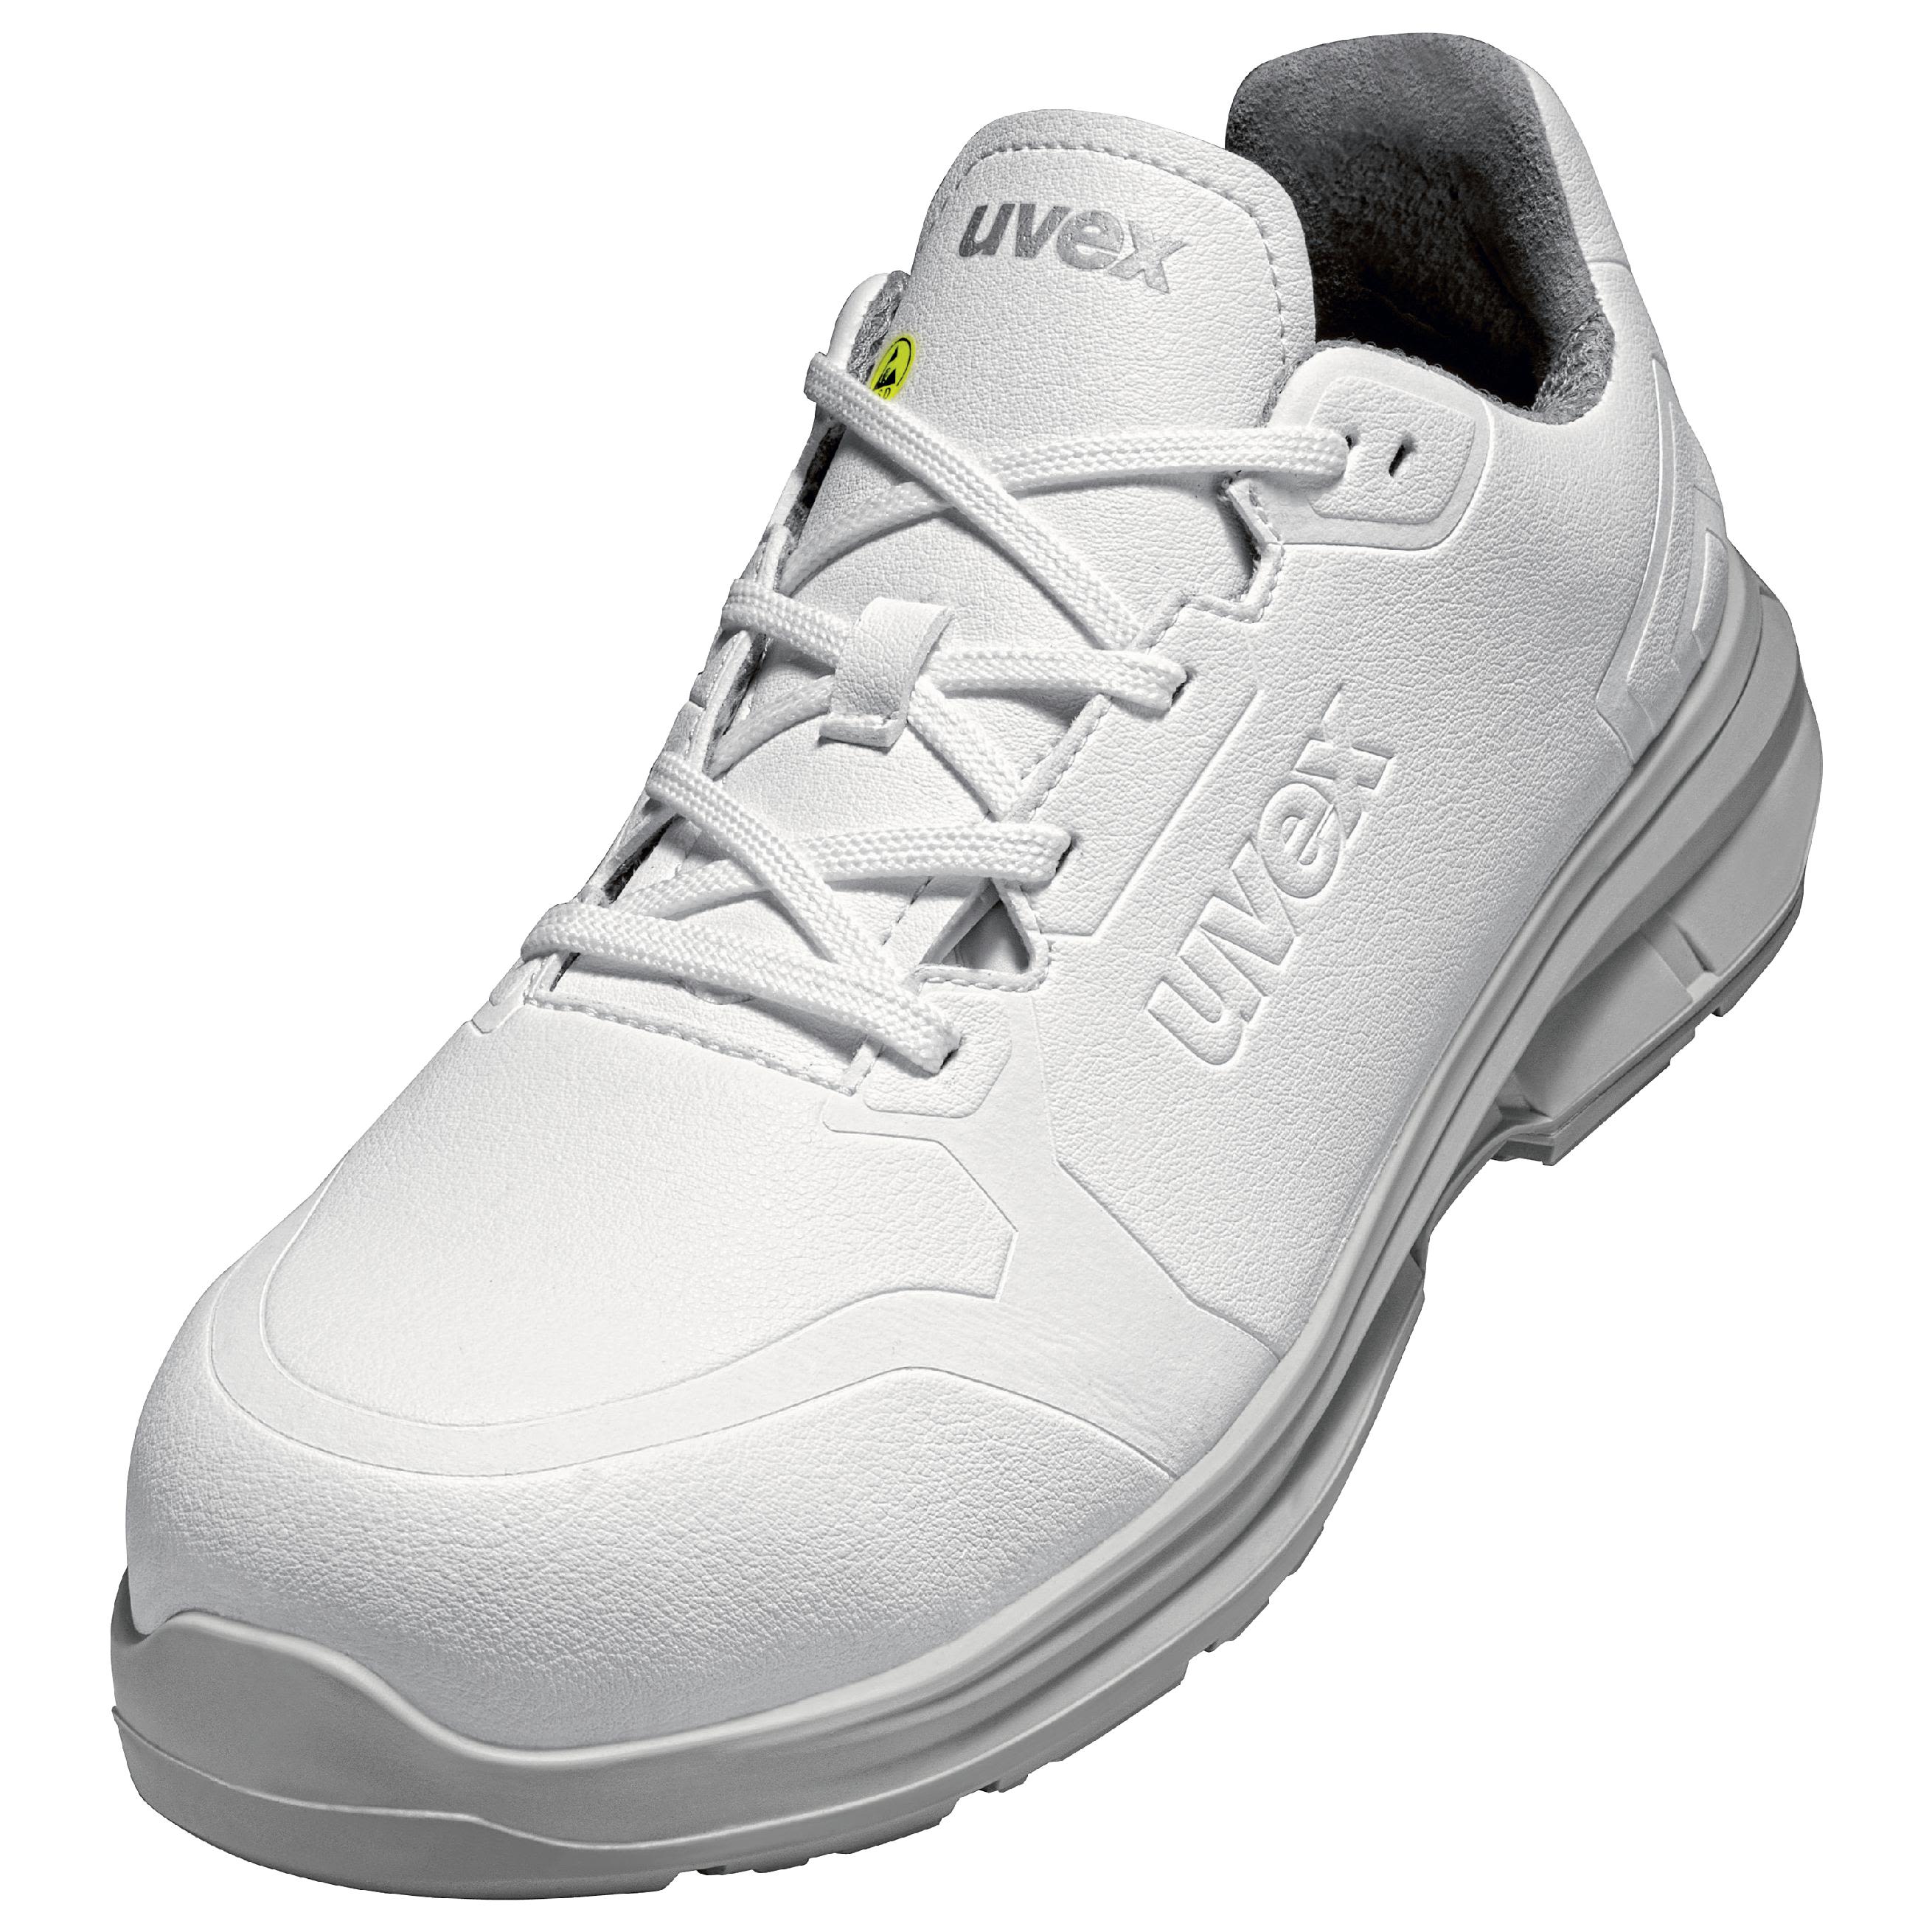 Zapatos de seguridad Unisex Uvex de color Blanco, talla 37, S3 SRC